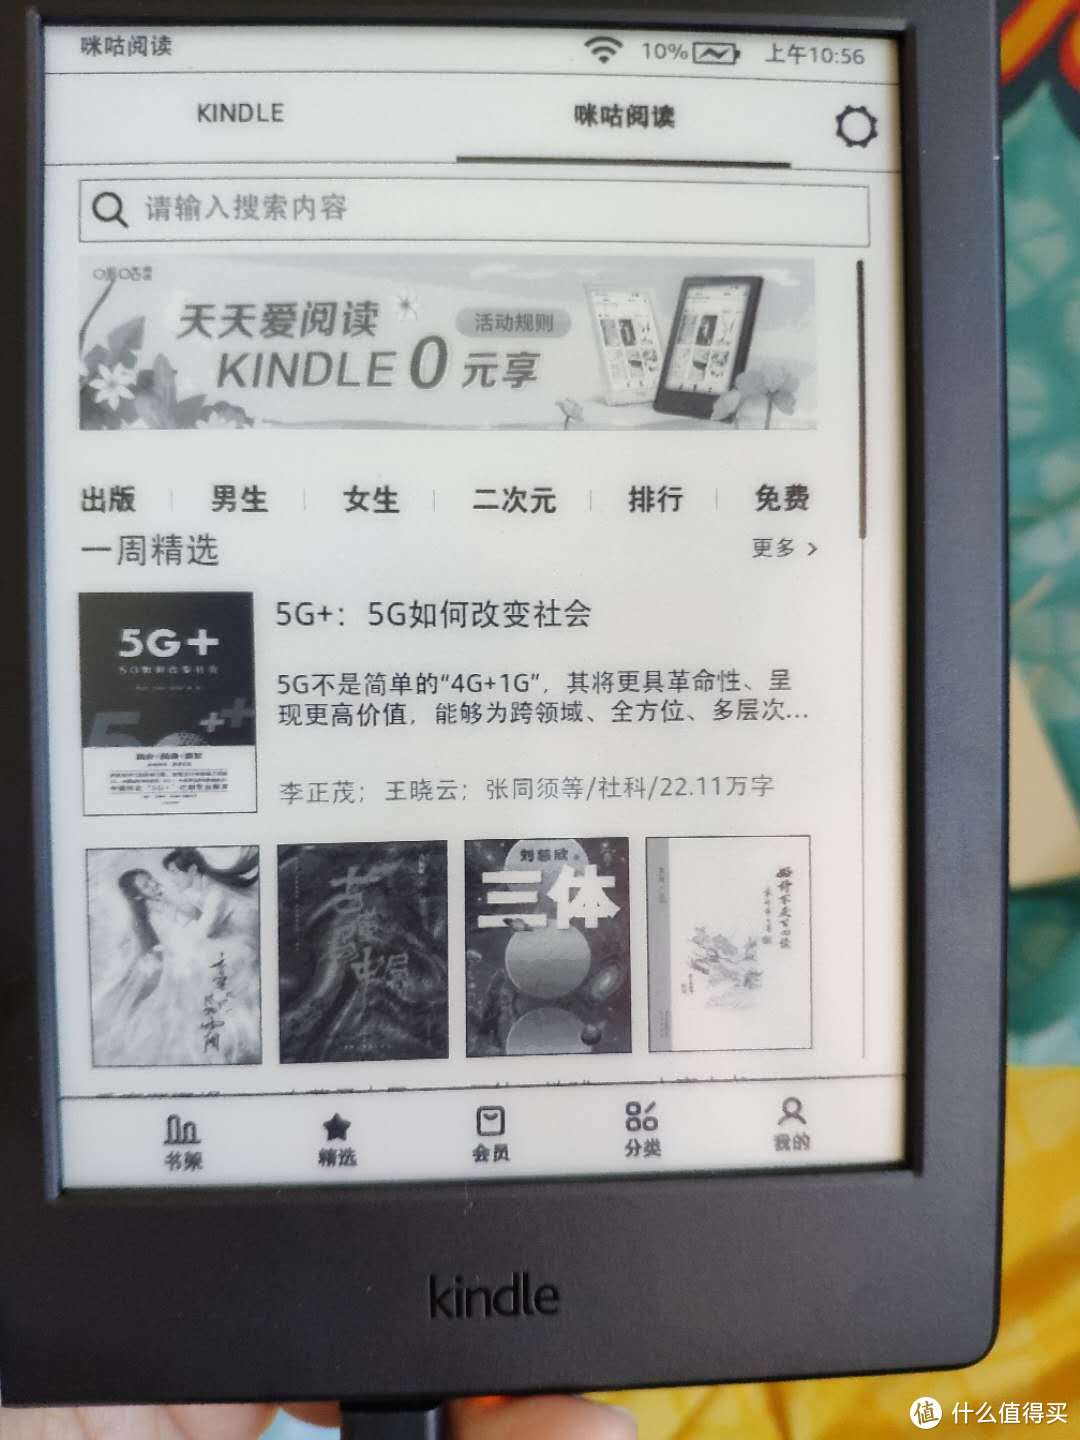 全新Kindle X咪咕版亚马逊电子书阅读器0元购，上车还是观望？？？